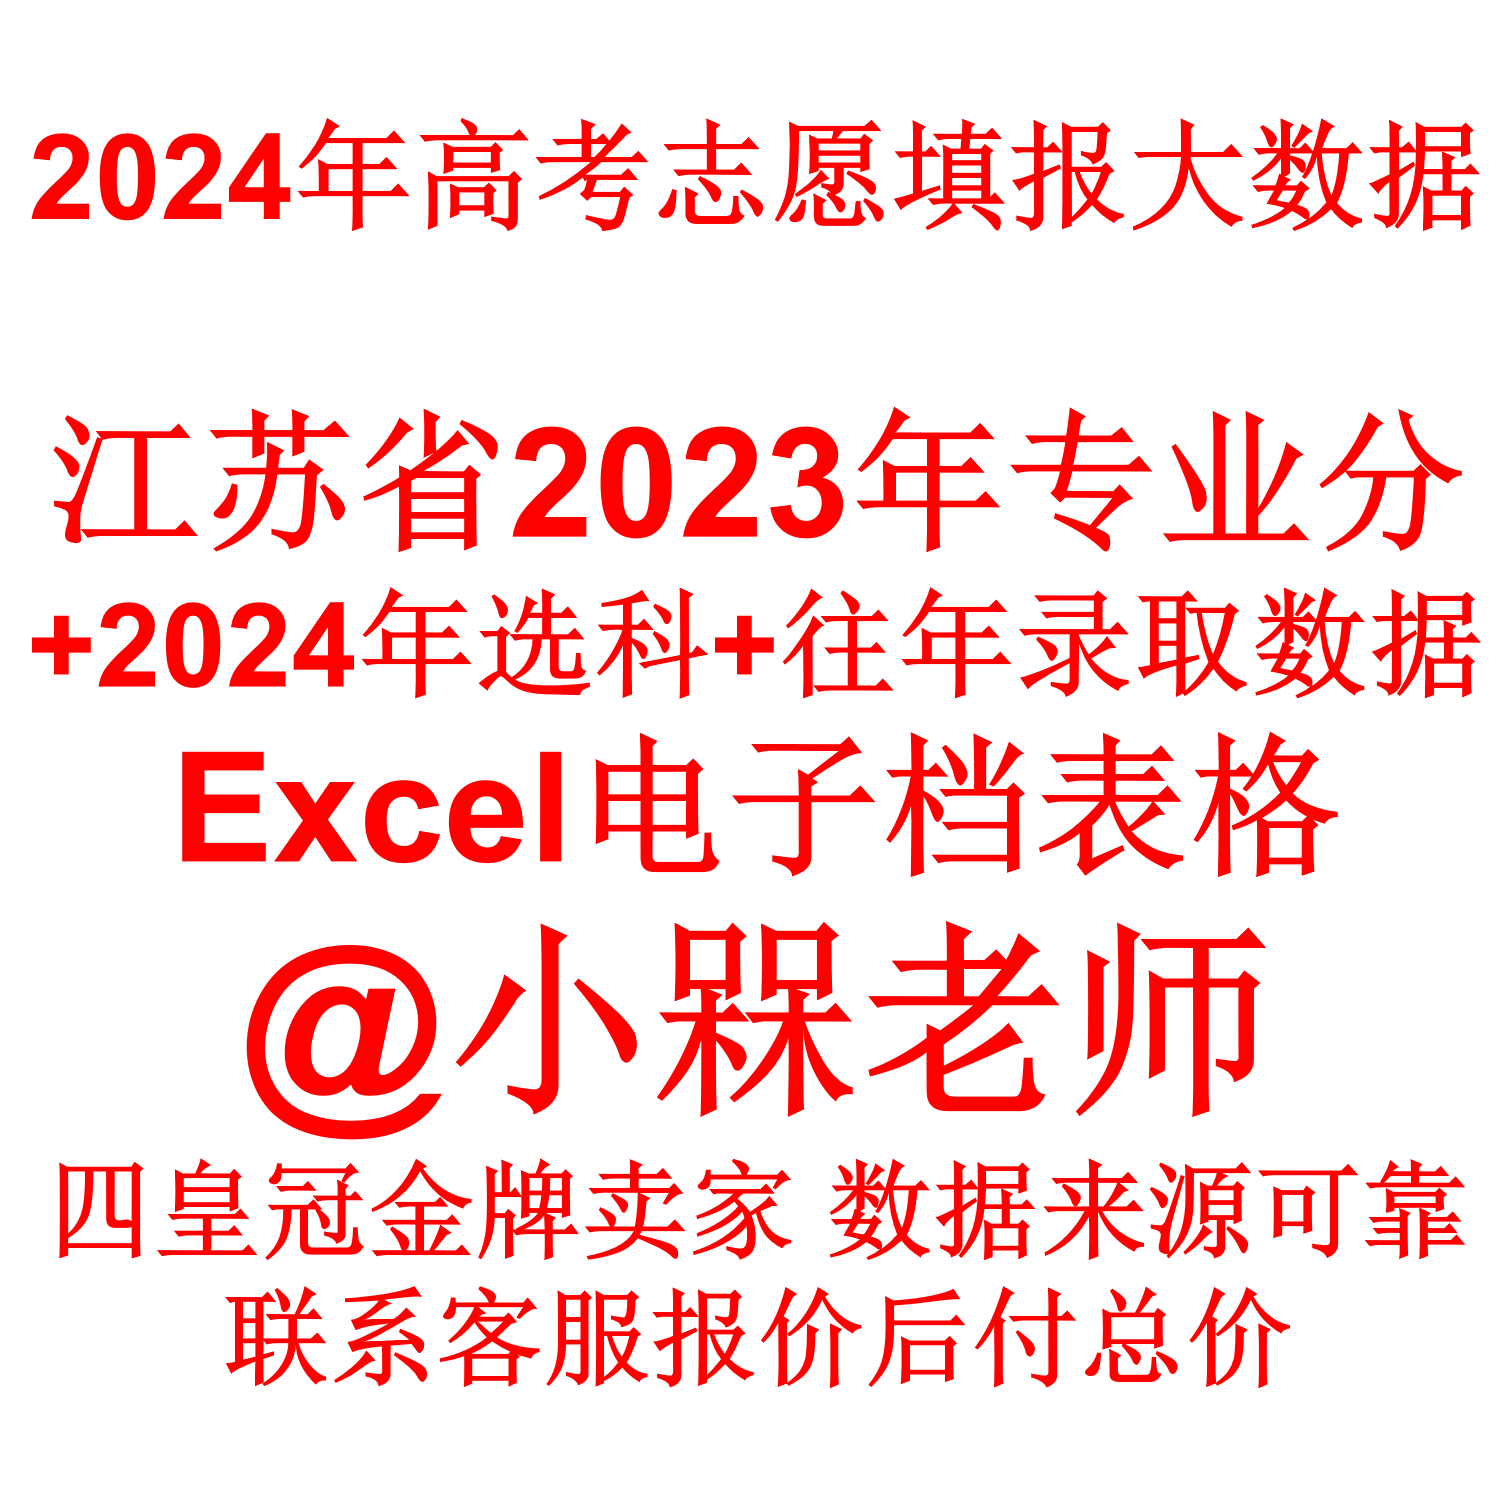 江苏省高考志愿填报指南2024年录取分数专业投档线Excel表格数据